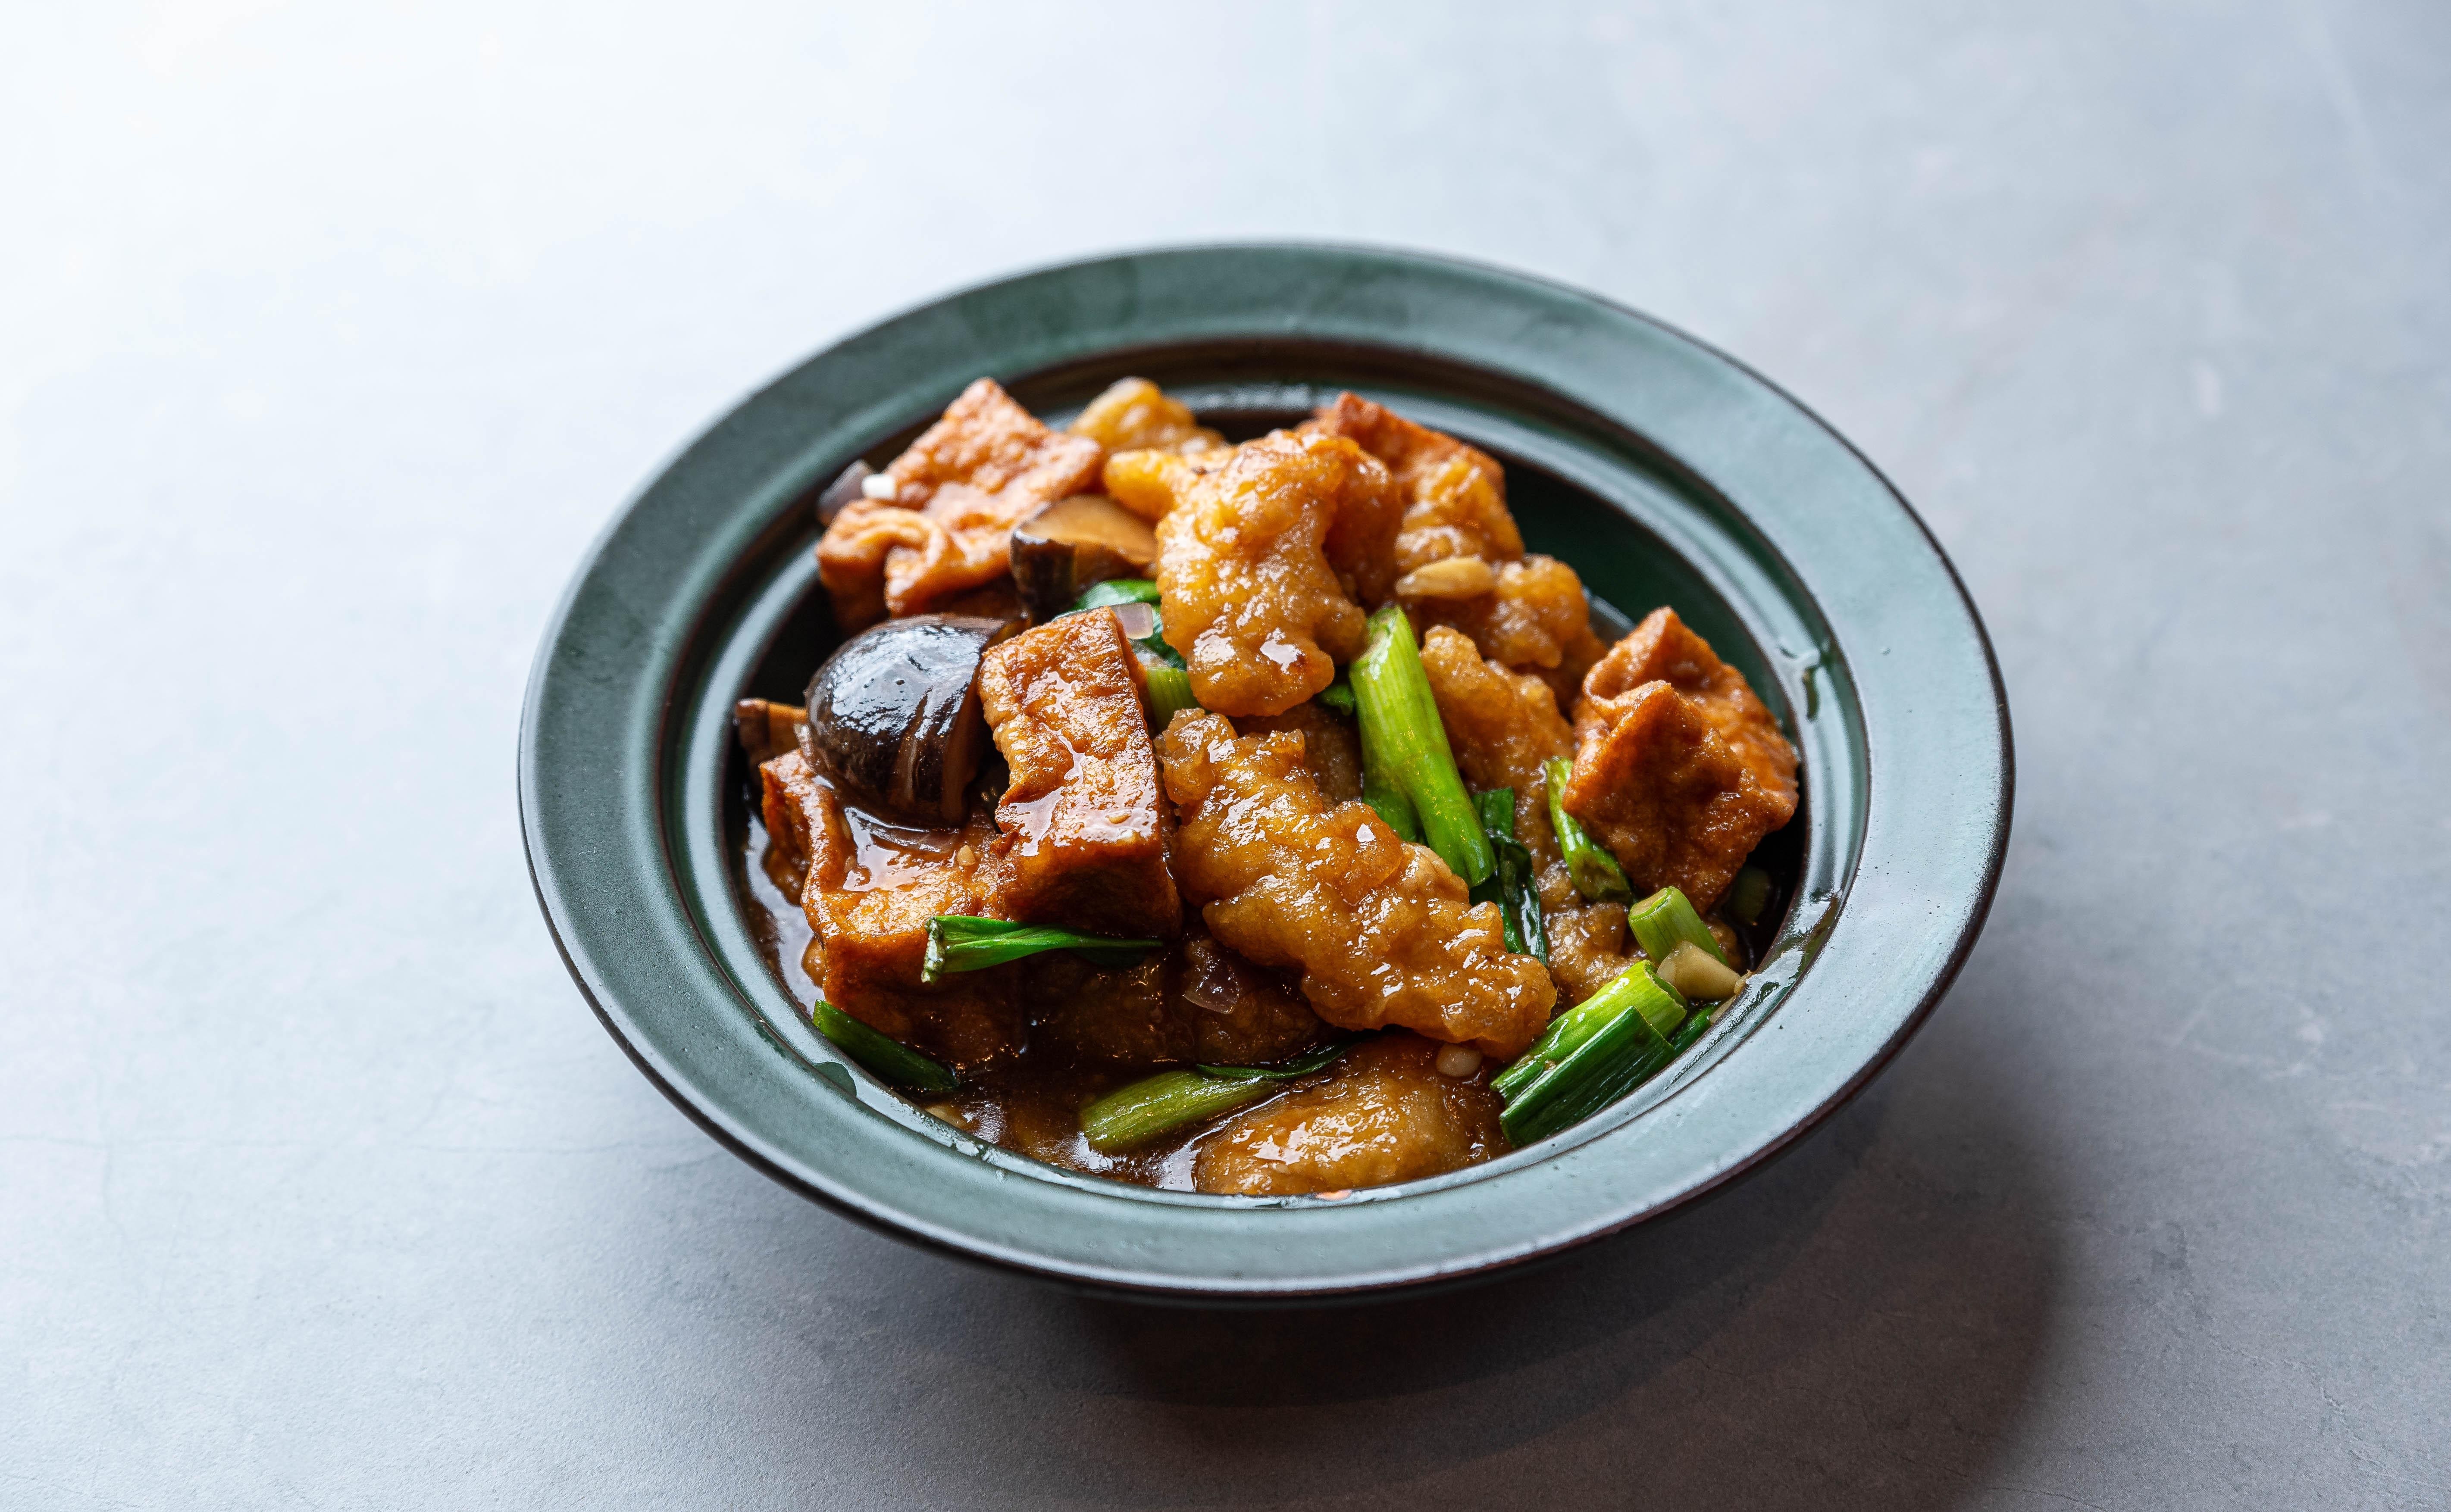 Fish Filet & Tofu 紅燒斑腩飯